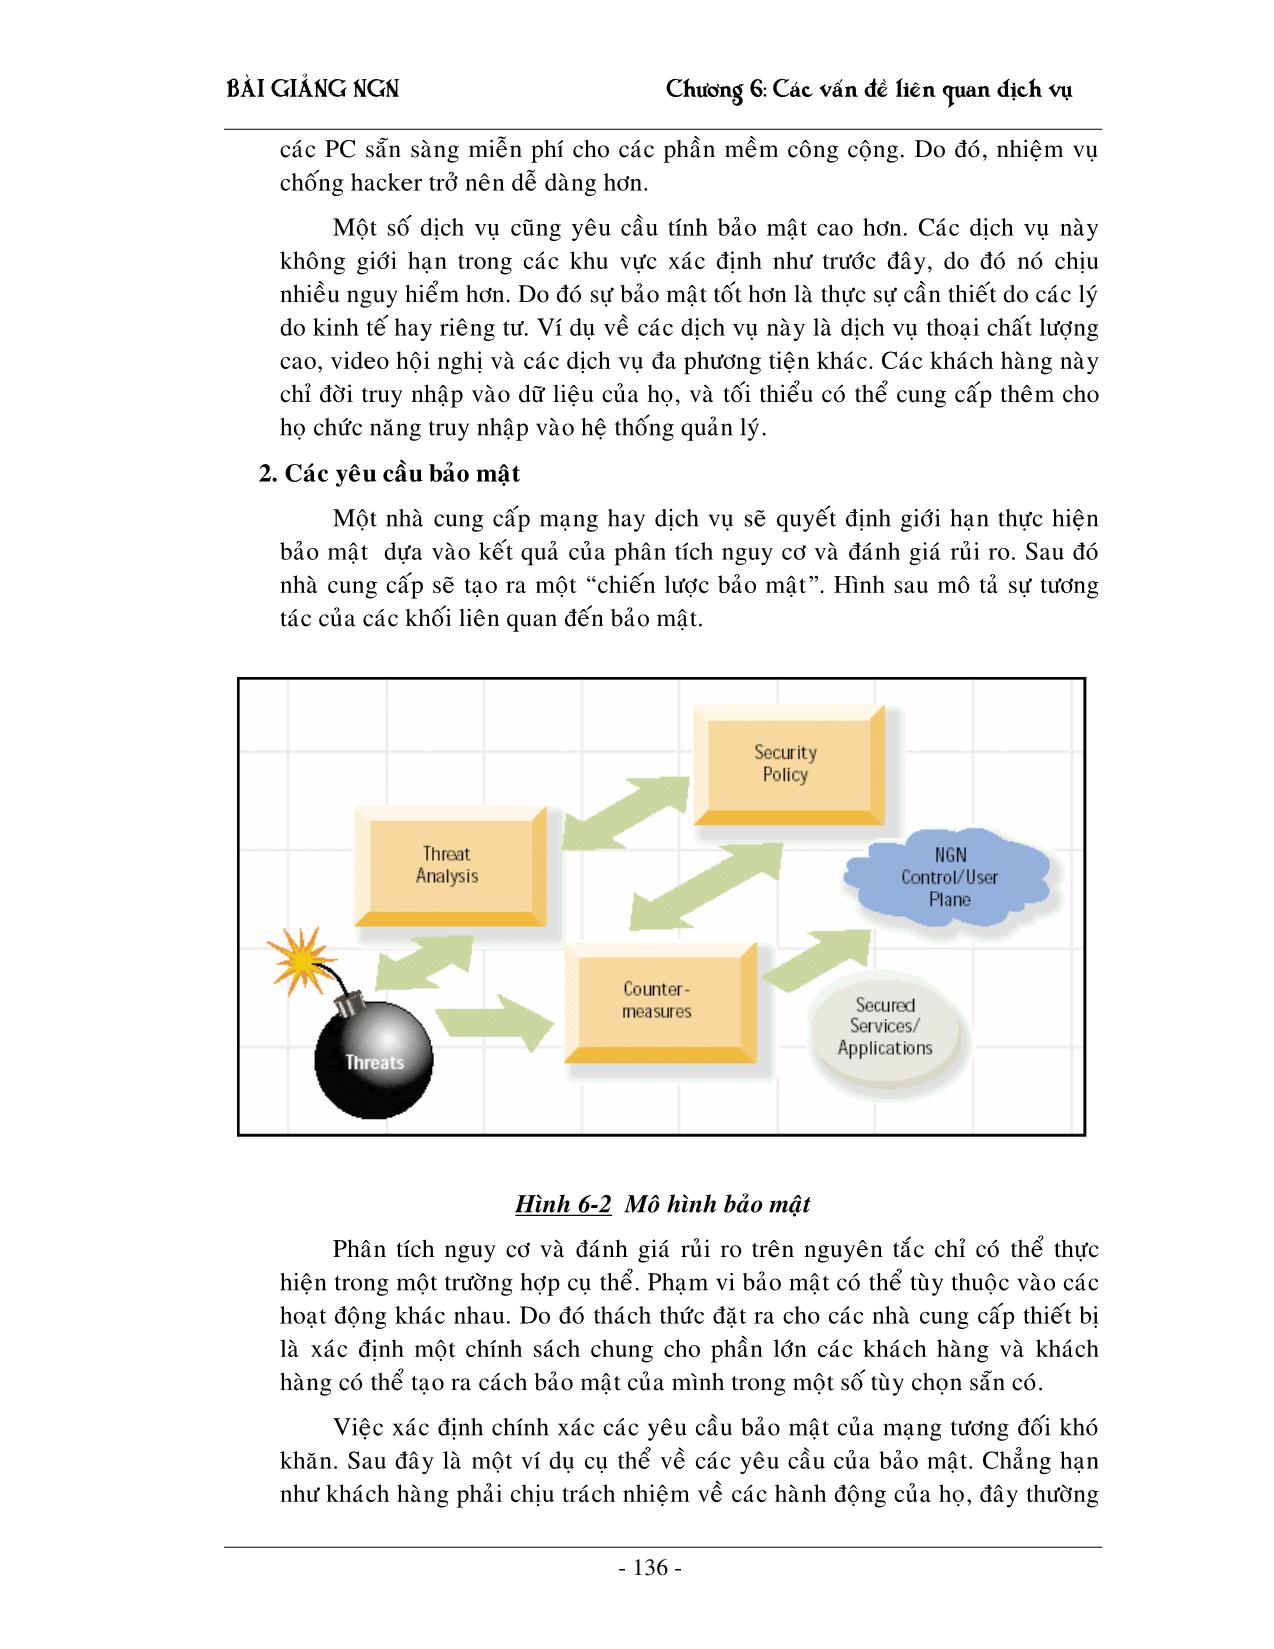 Giáo trình NGN - Chương 6: Các vấn đề liên quan đến dịch vụ trang 3